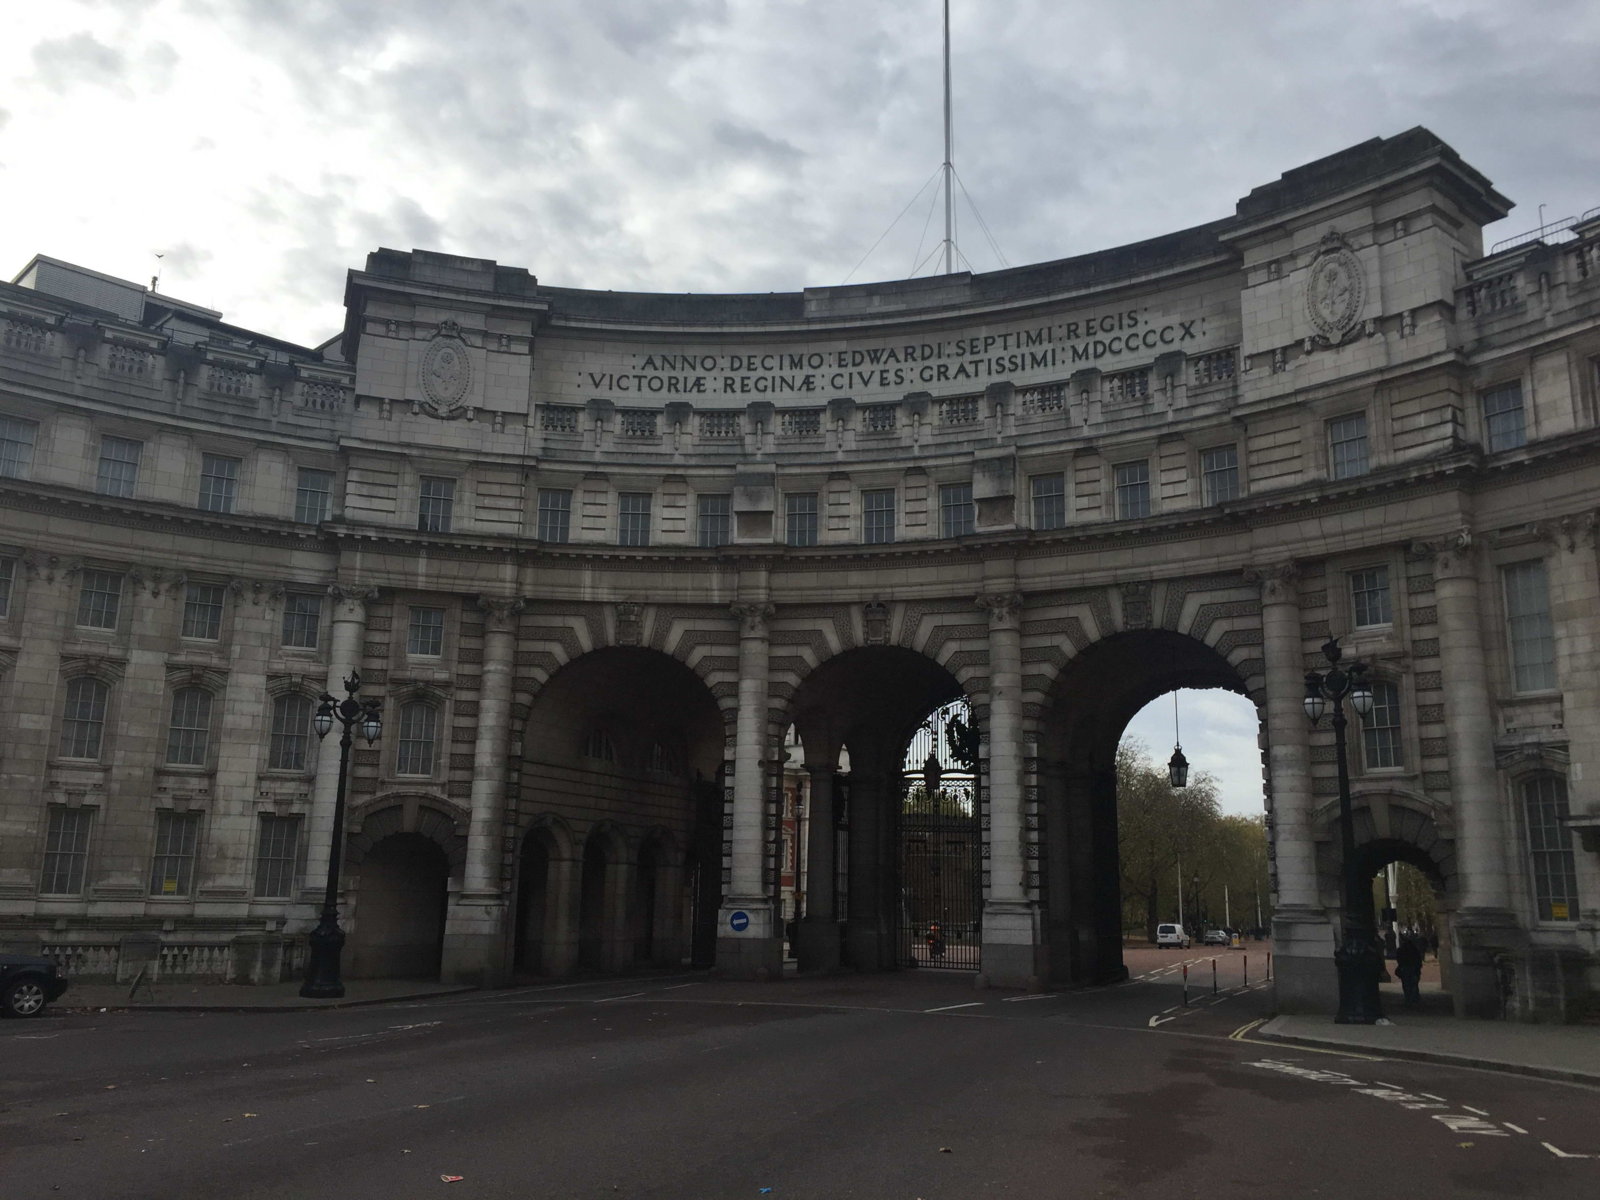 entrance gates of Buckingham Palace